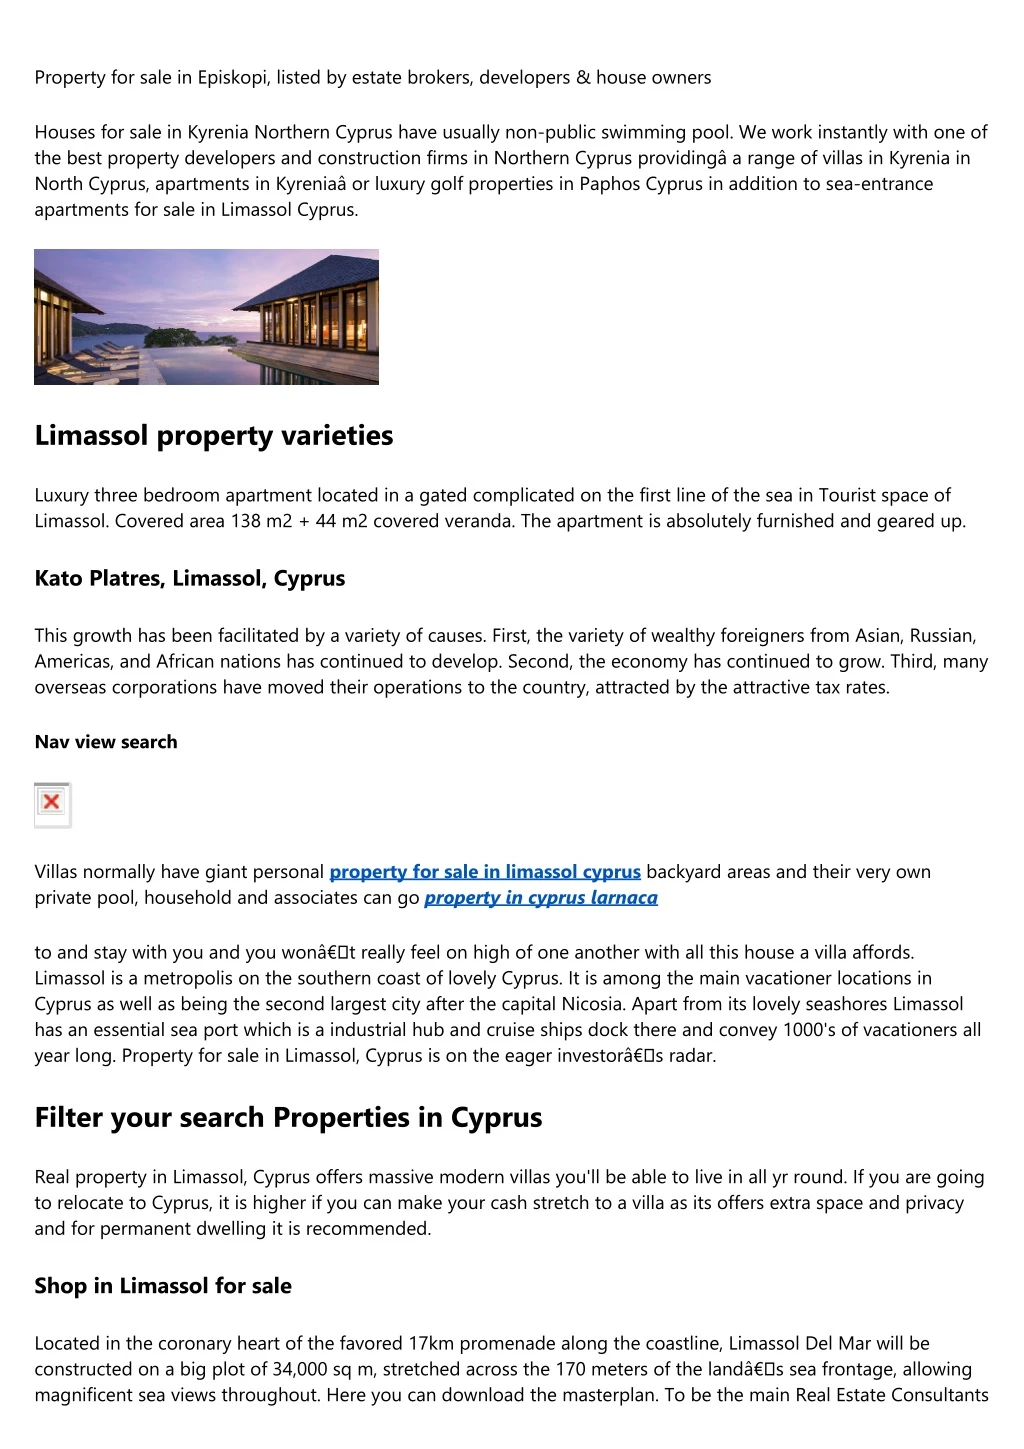 property for sale in episkopi listed by estate